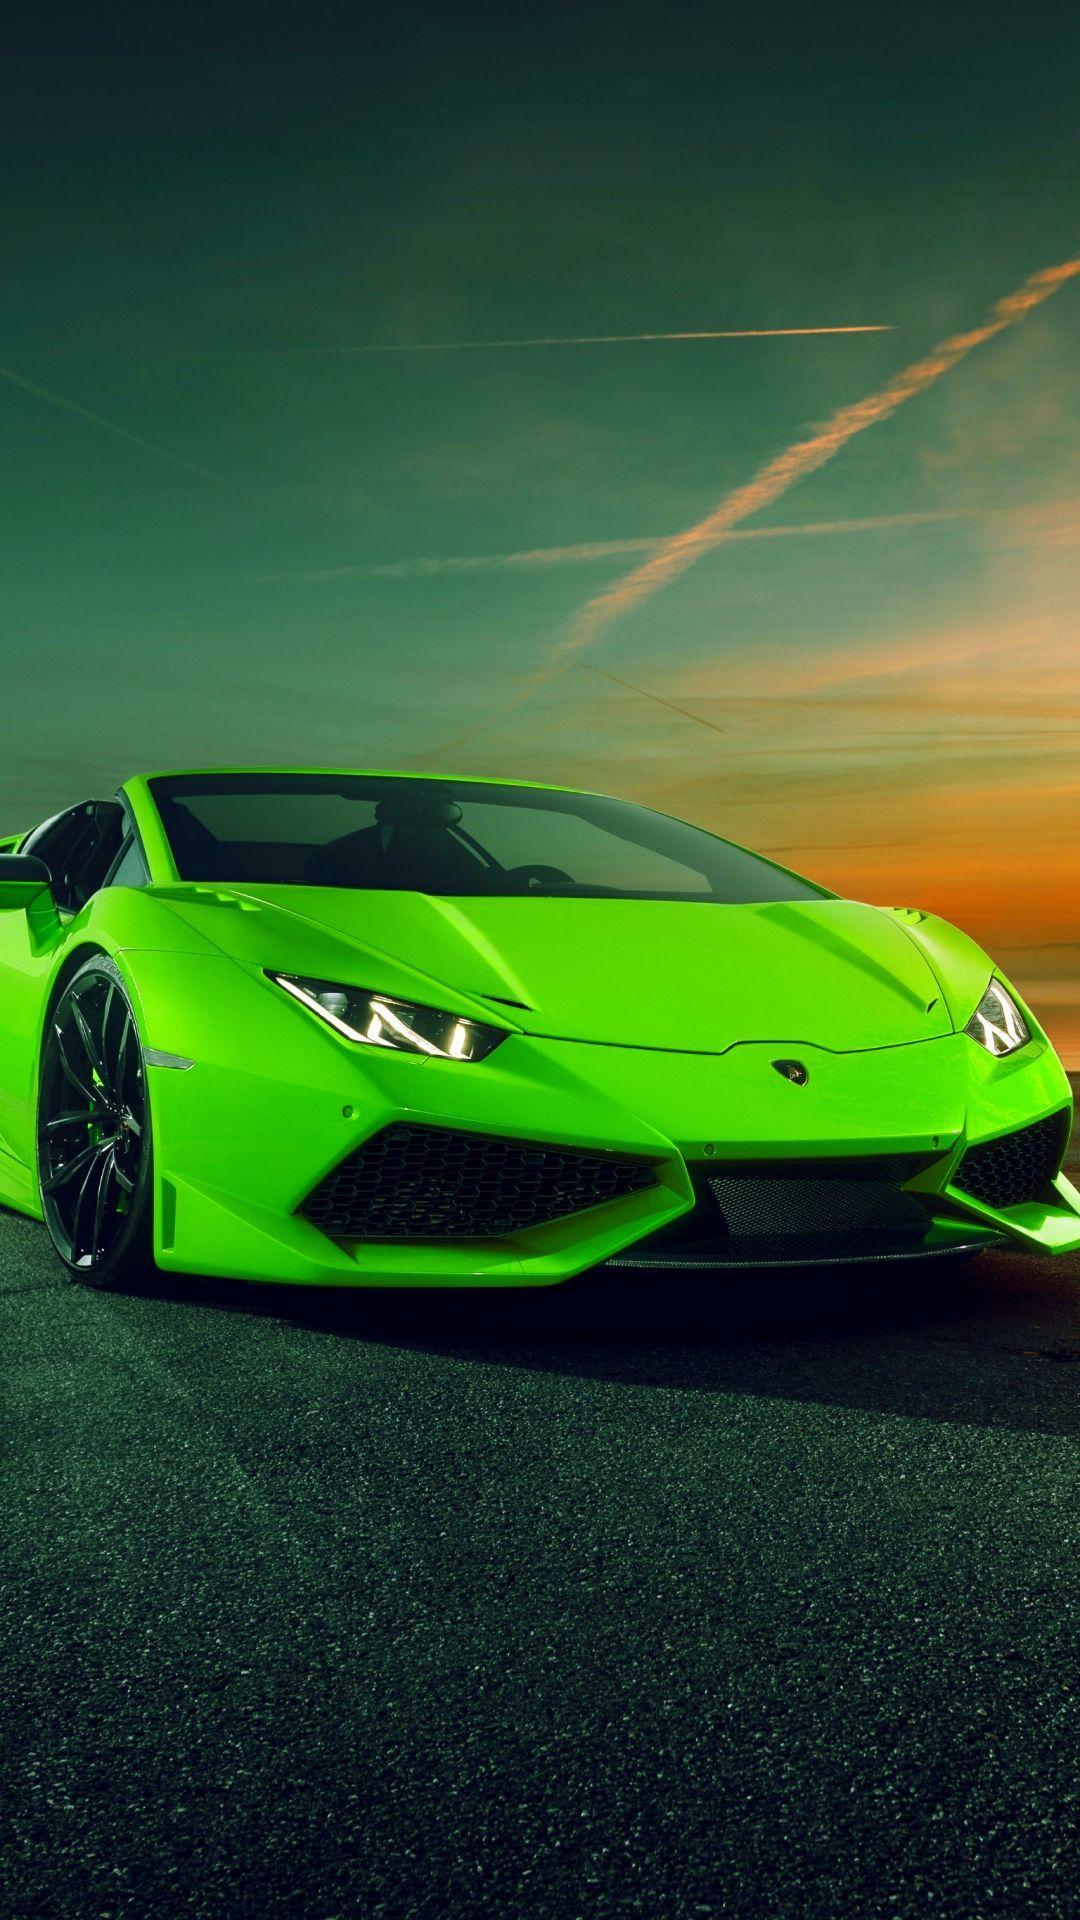 Hình nền Lamborghini màu xanh lá mãn nhãn với sức hút mạnh mẽ, chiếc xe được tô điểm bằng gam màu tươi sáng, tạo ra một điểm nhấn độc đáo trên màn hình của bạn. Nếu bạn yêu thích Lamborghini, đây chắc chắn là bức hình nền mà bạn không nên bỏ qua.